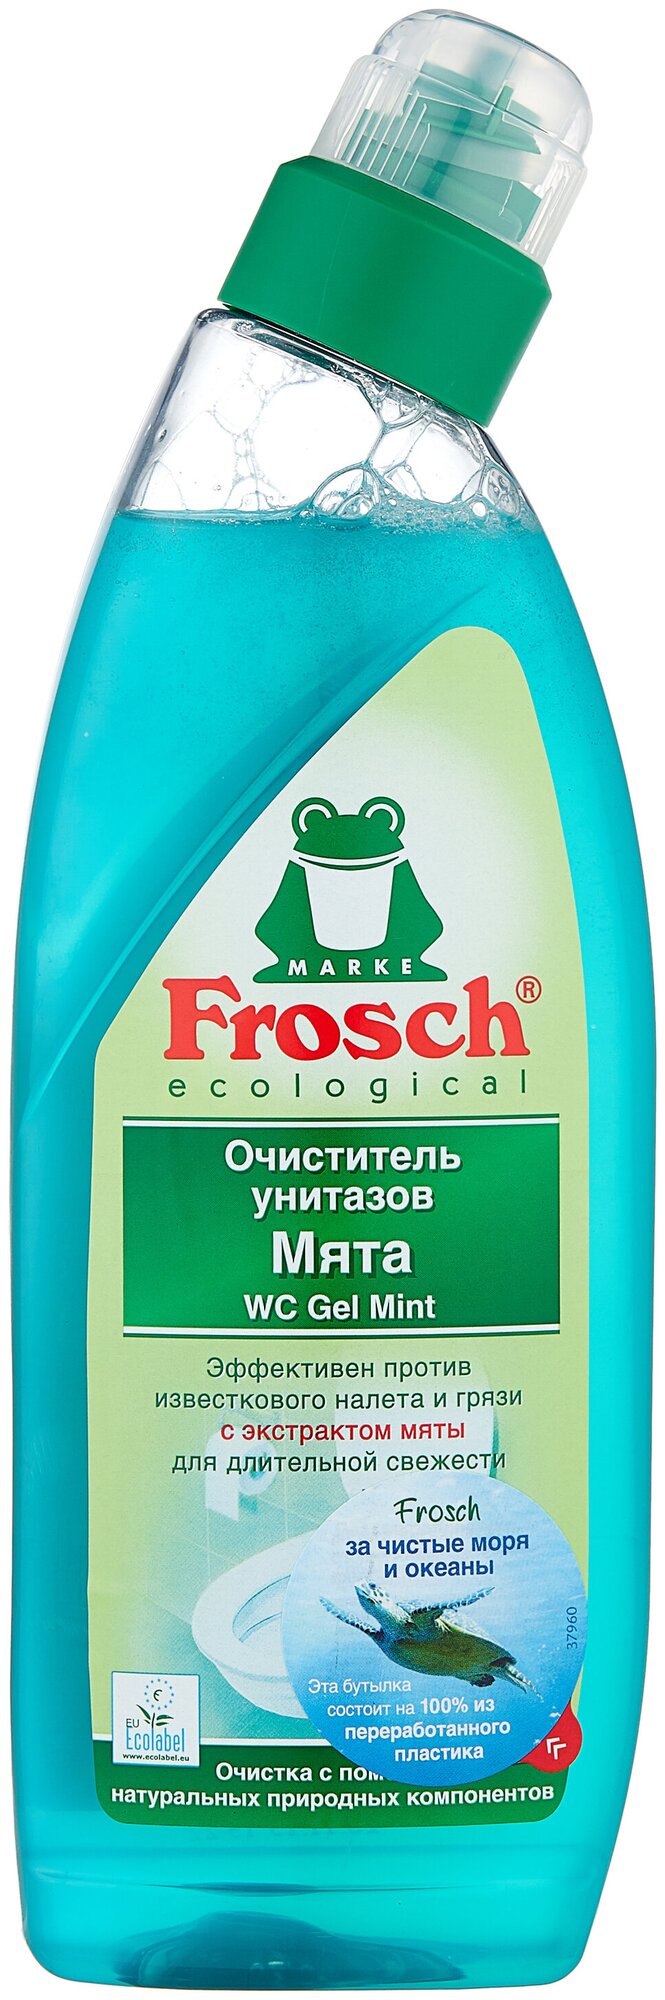 Frosch гель для унитазов Мята 0.75 л